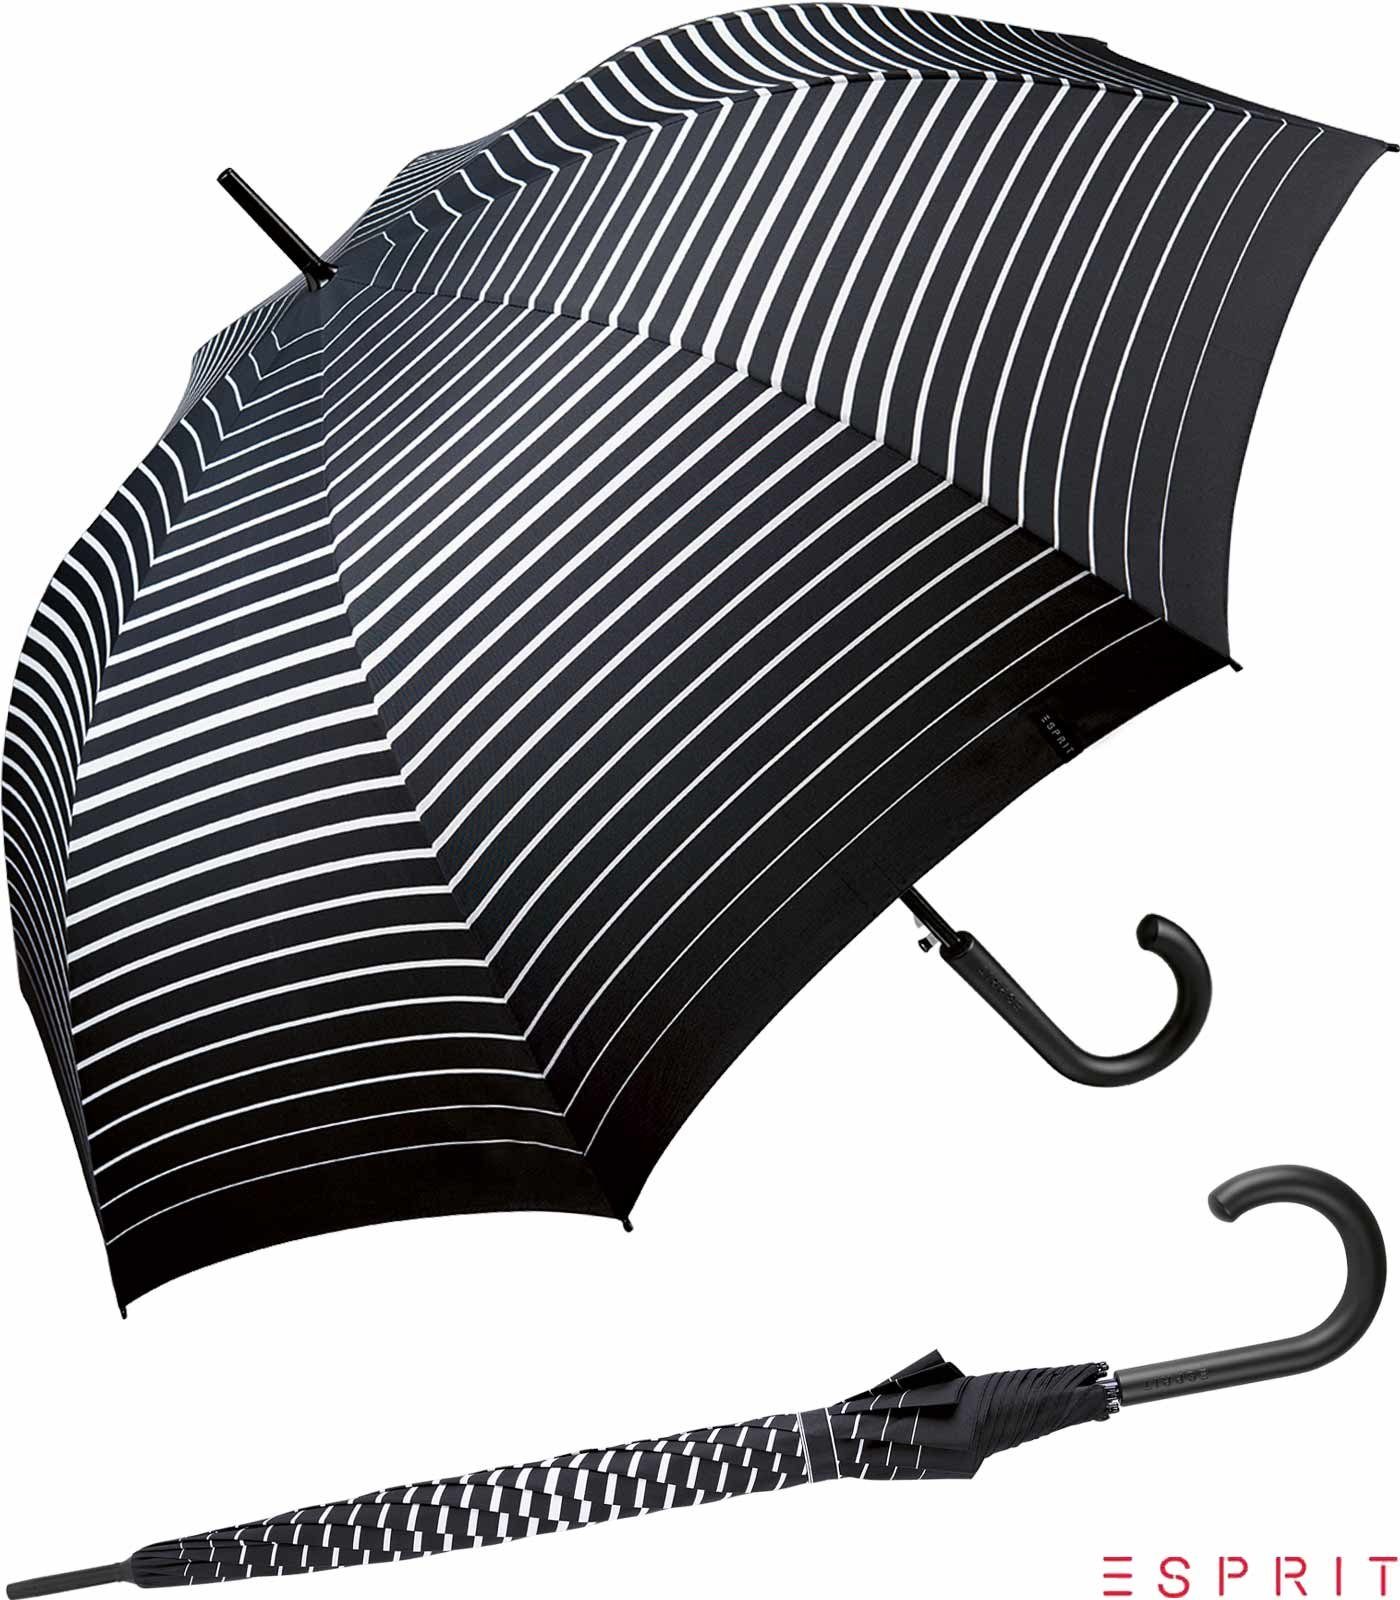 Esprit Langregenschirm Damen mit Auf-Automatik - Degradee Stripe - black, groß, stabil, in moderner Streifen-Optik schwarz-weiß